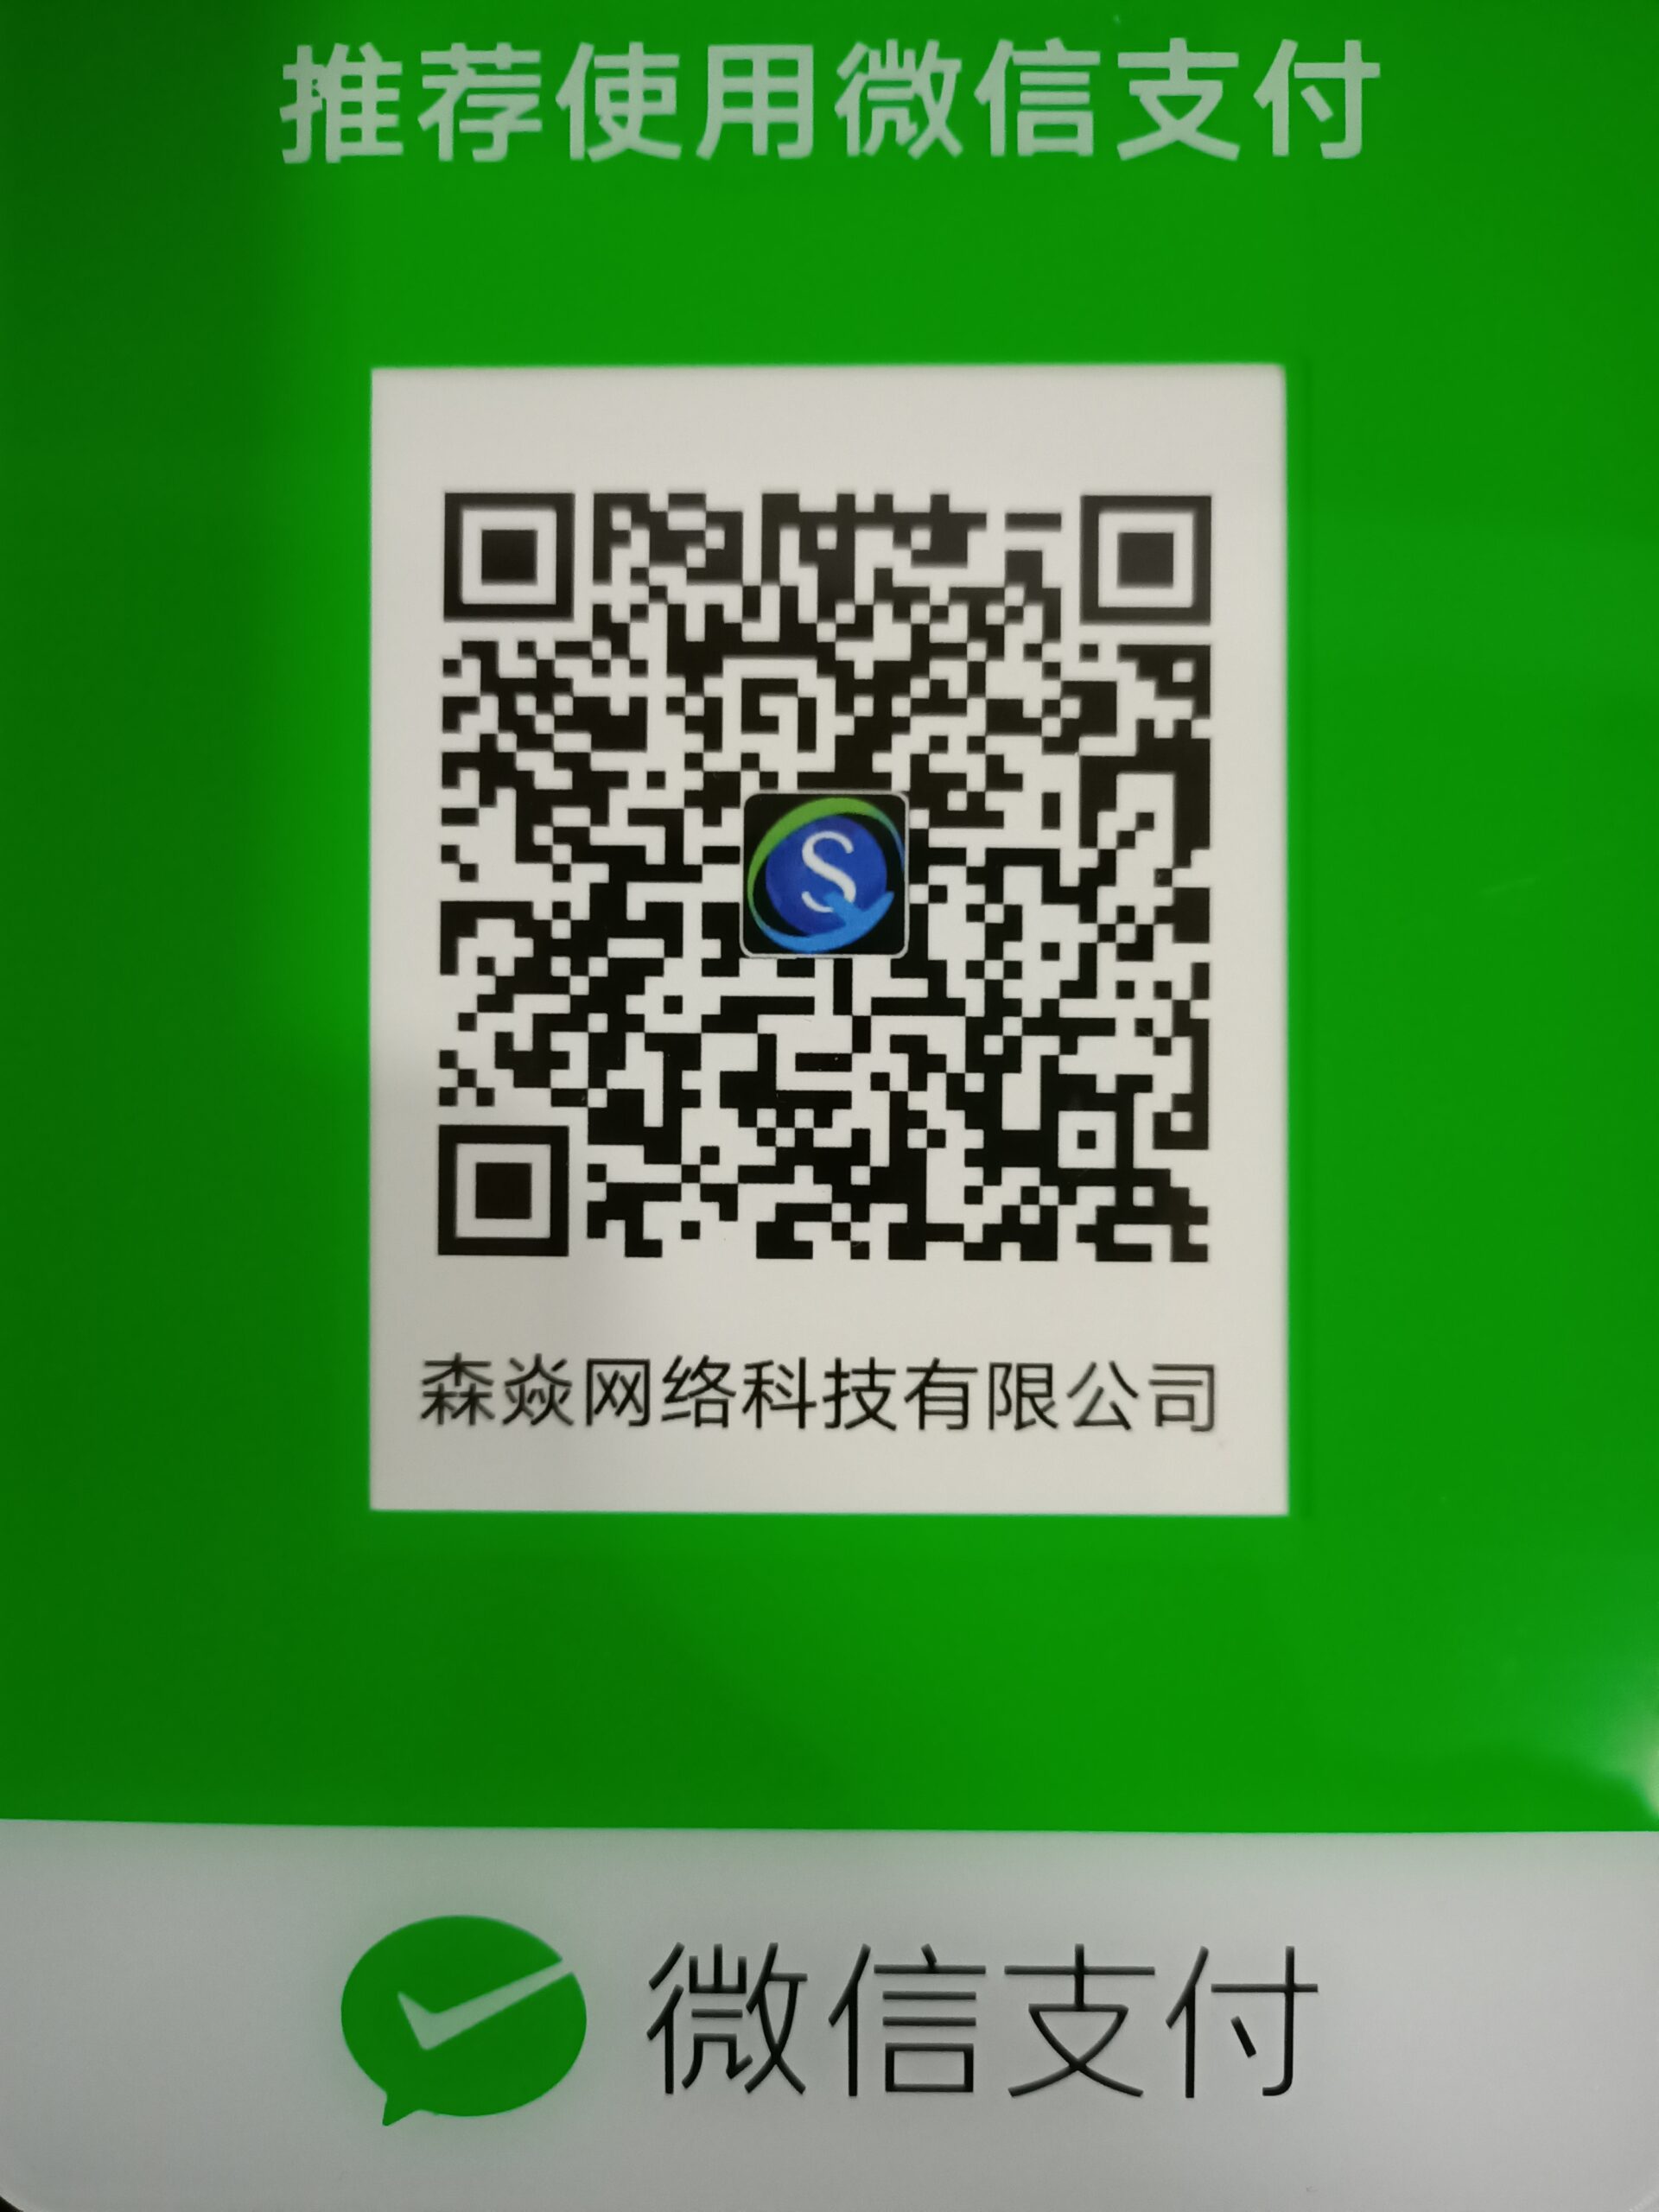 义乌市森焱网络科技有限公司